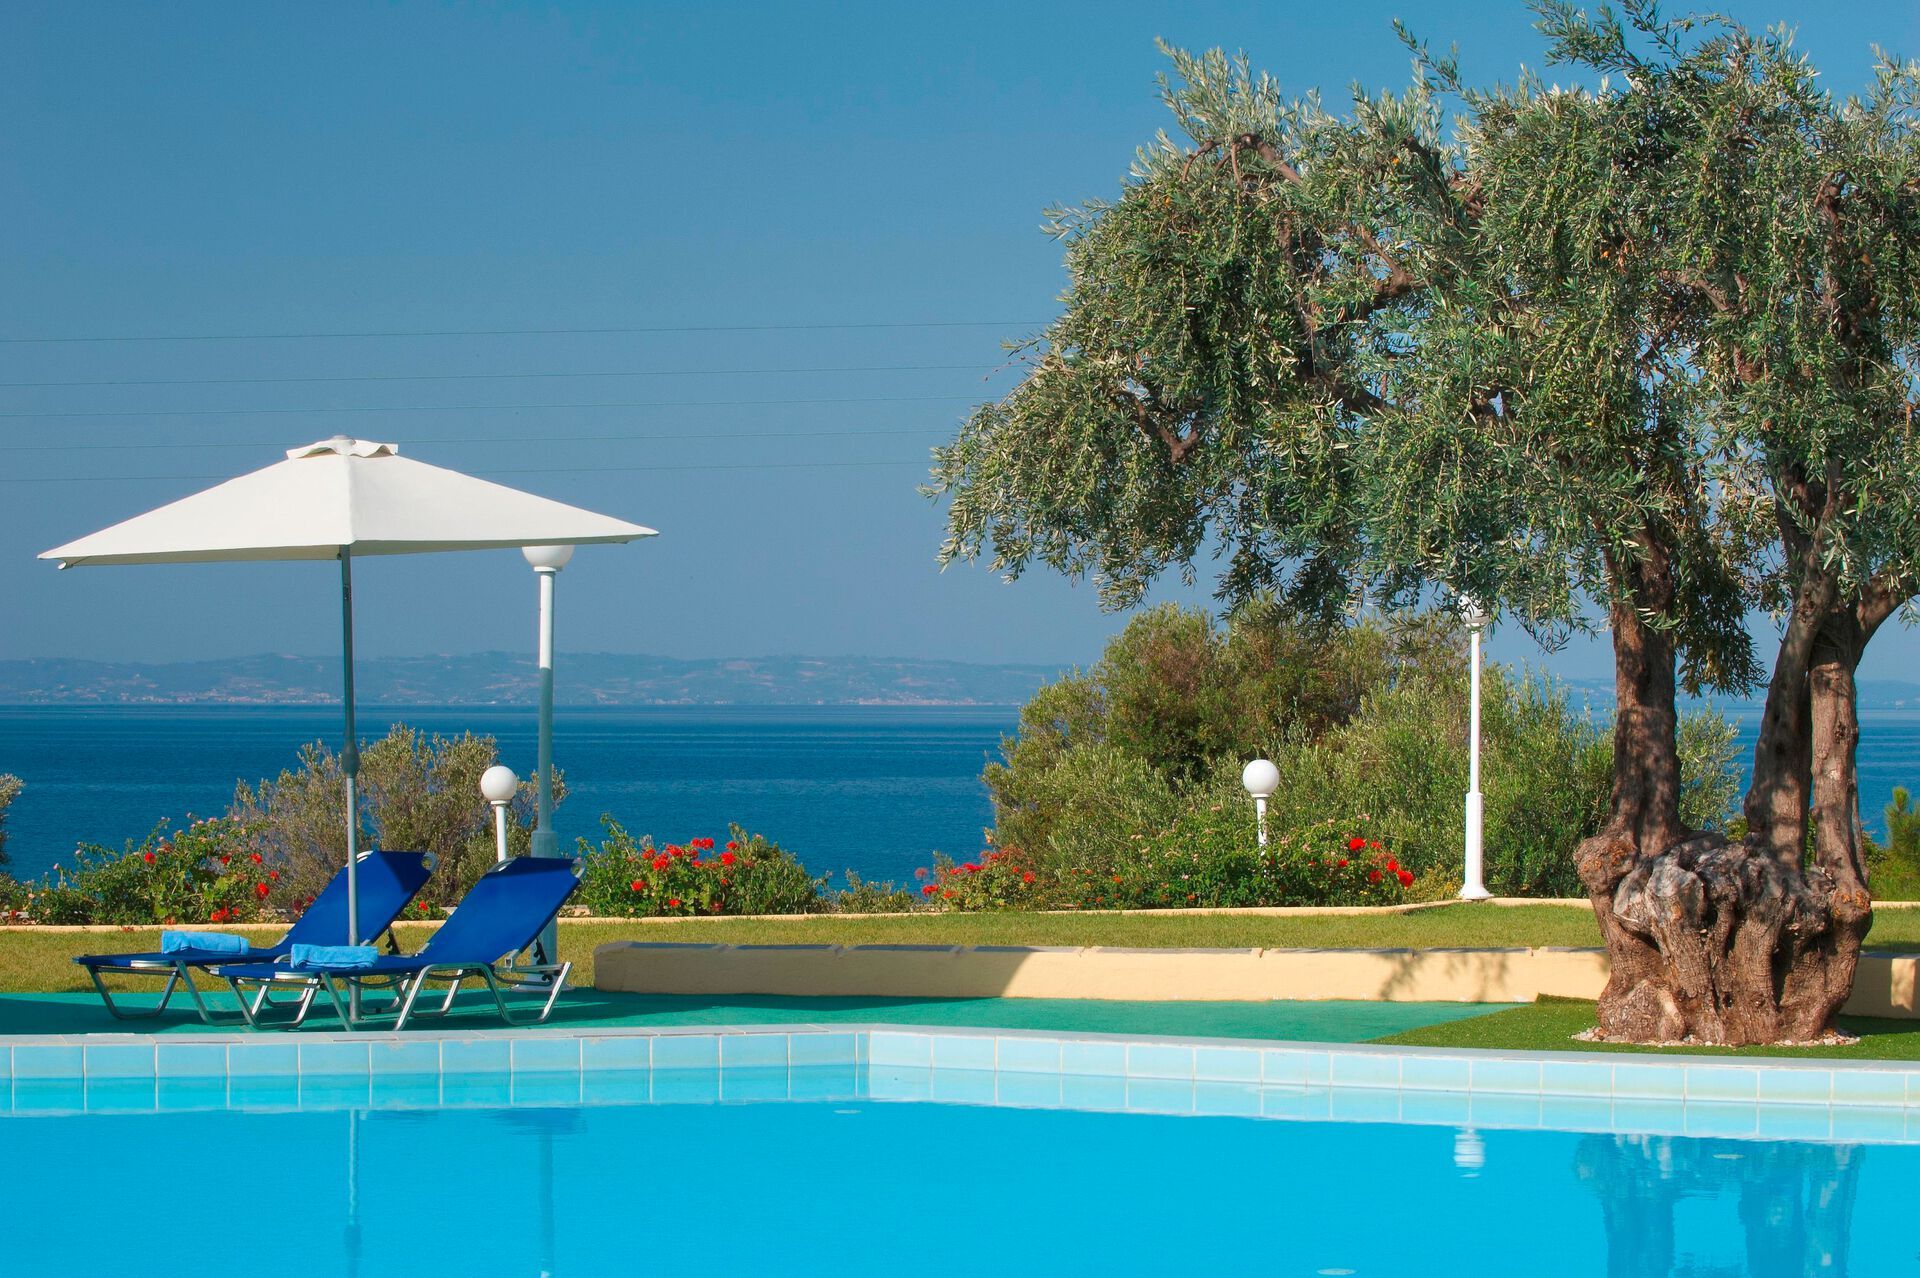 Grèce - Grèce continentale - Thessalonique et sa région - Hôtel Acrotel Elea Beach 4*